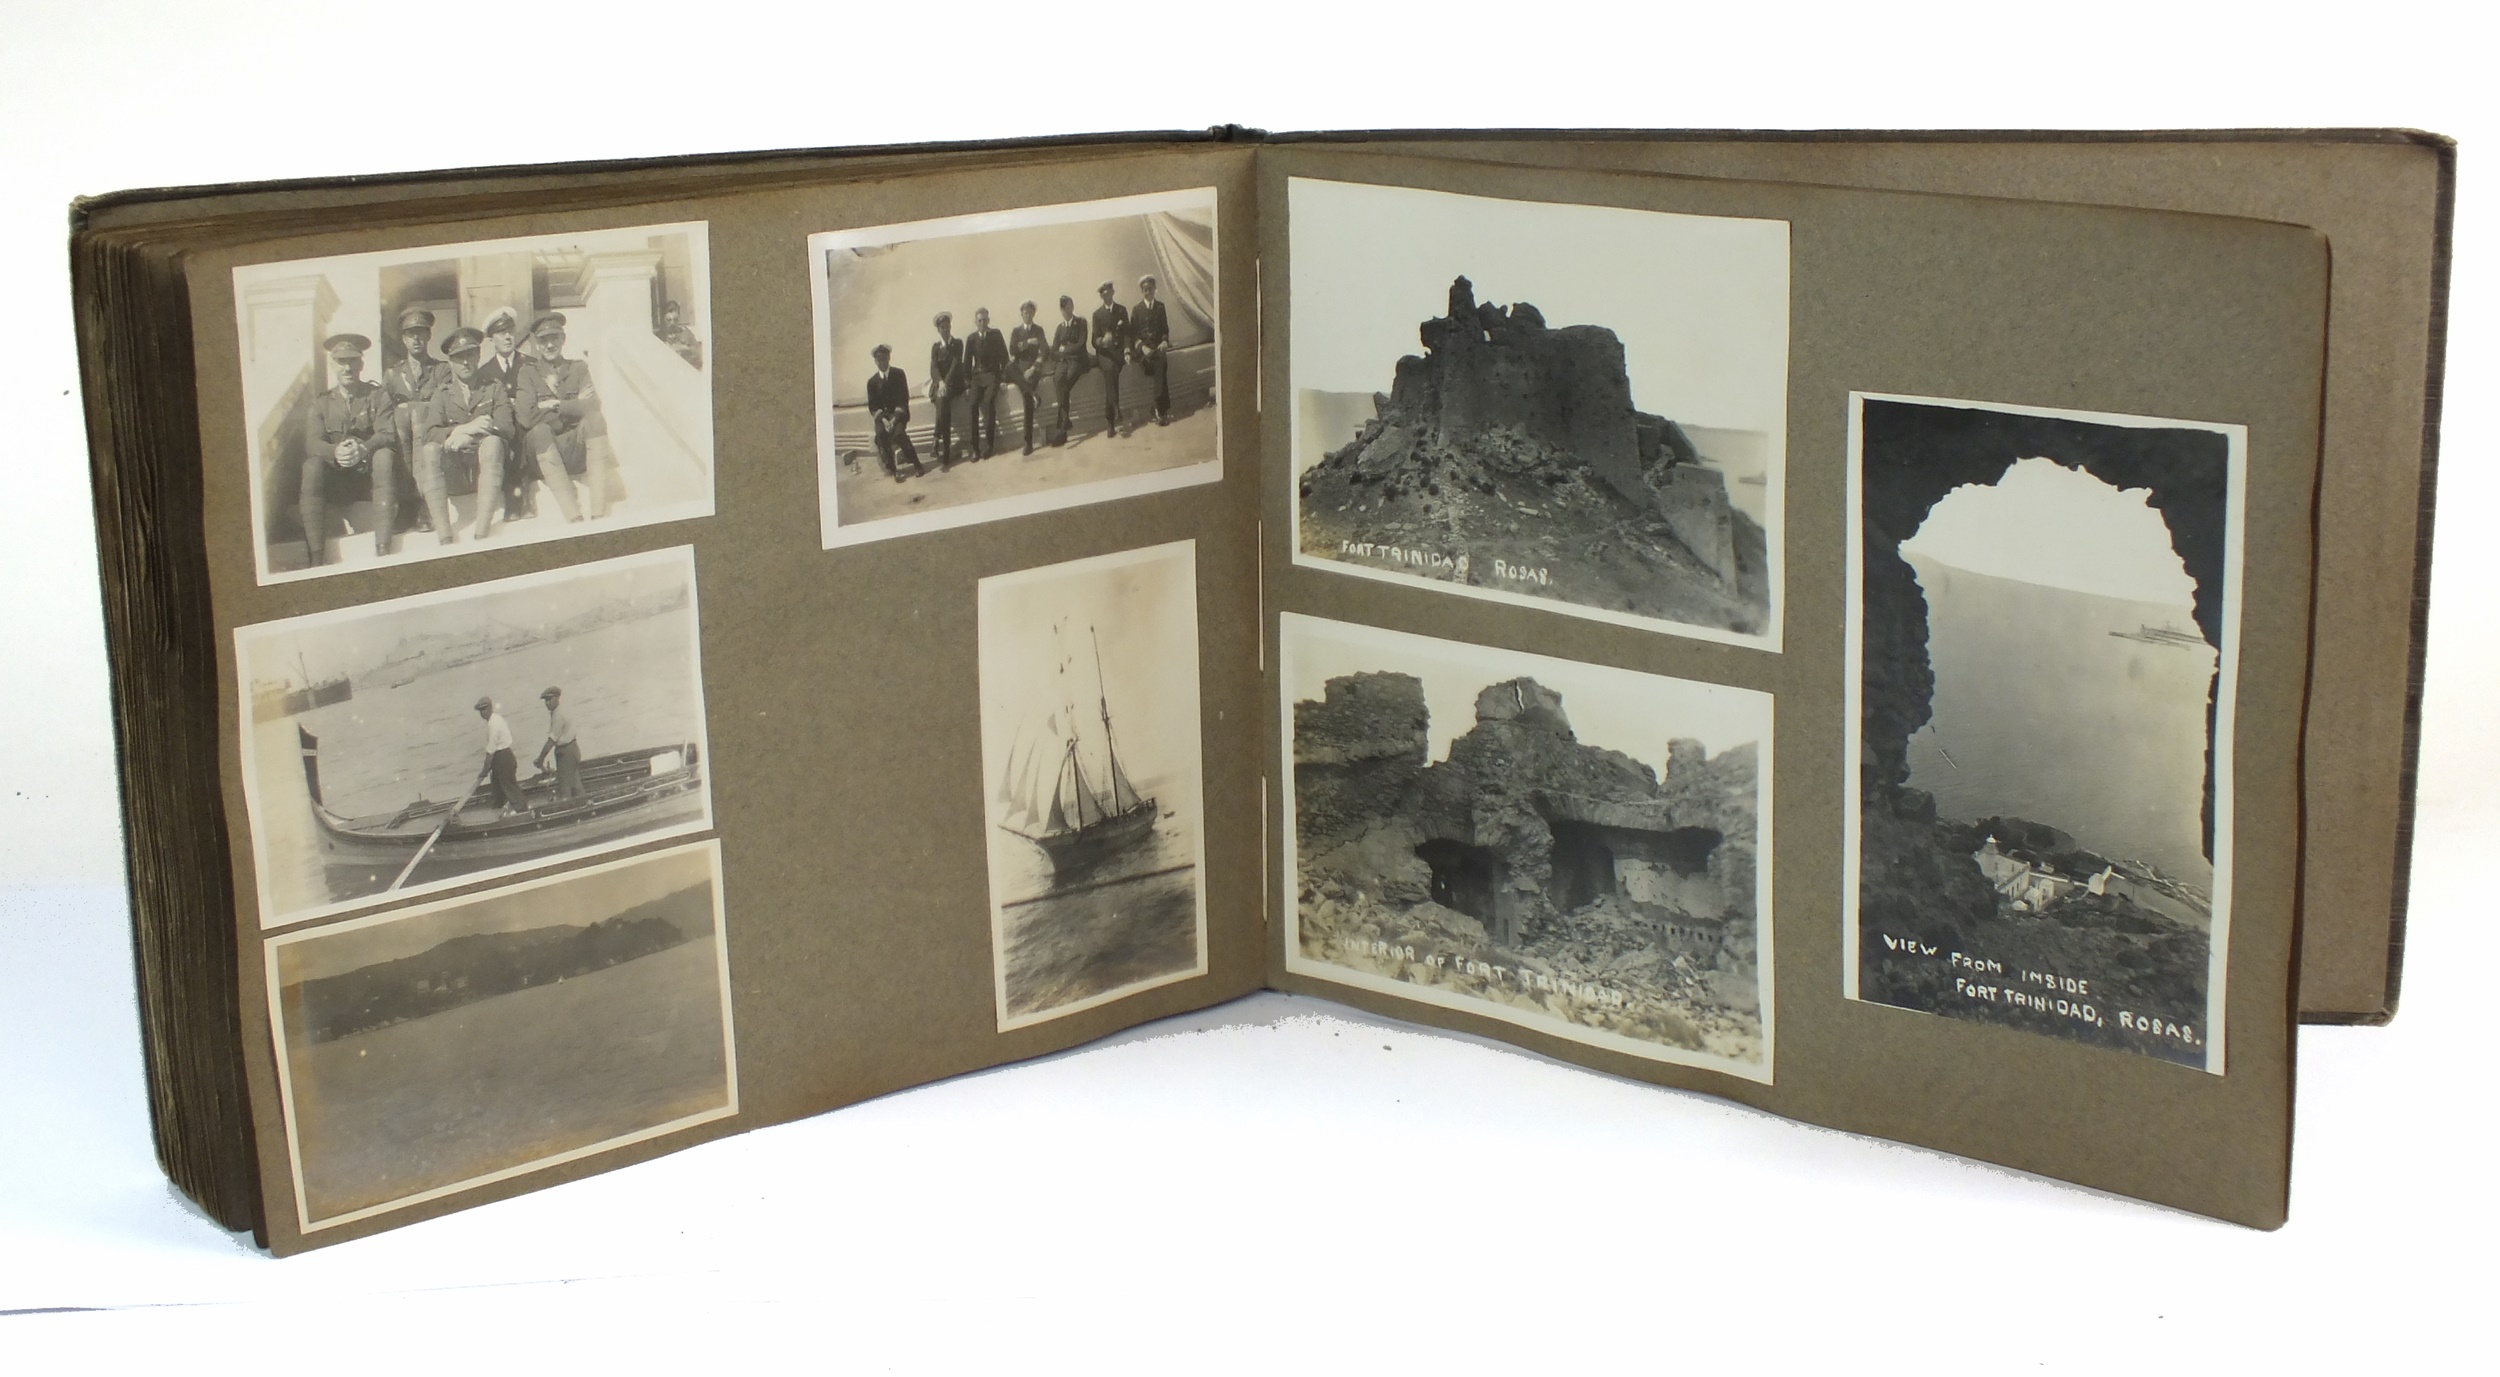 An inter-war period Royal Naval interest photograph album.